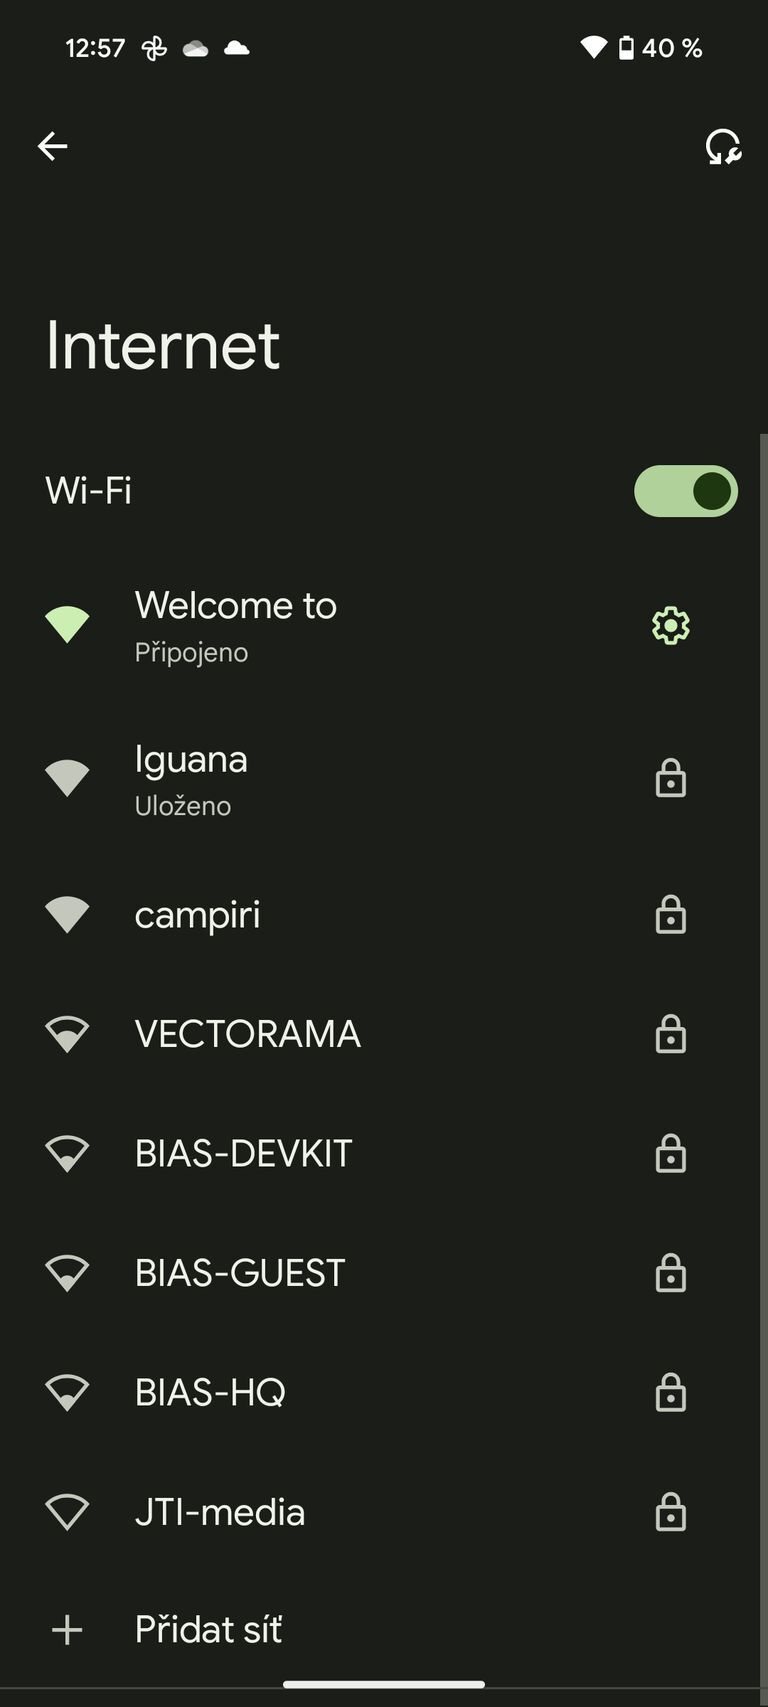 sdílení Wi-Fi mobilenet.cz radí